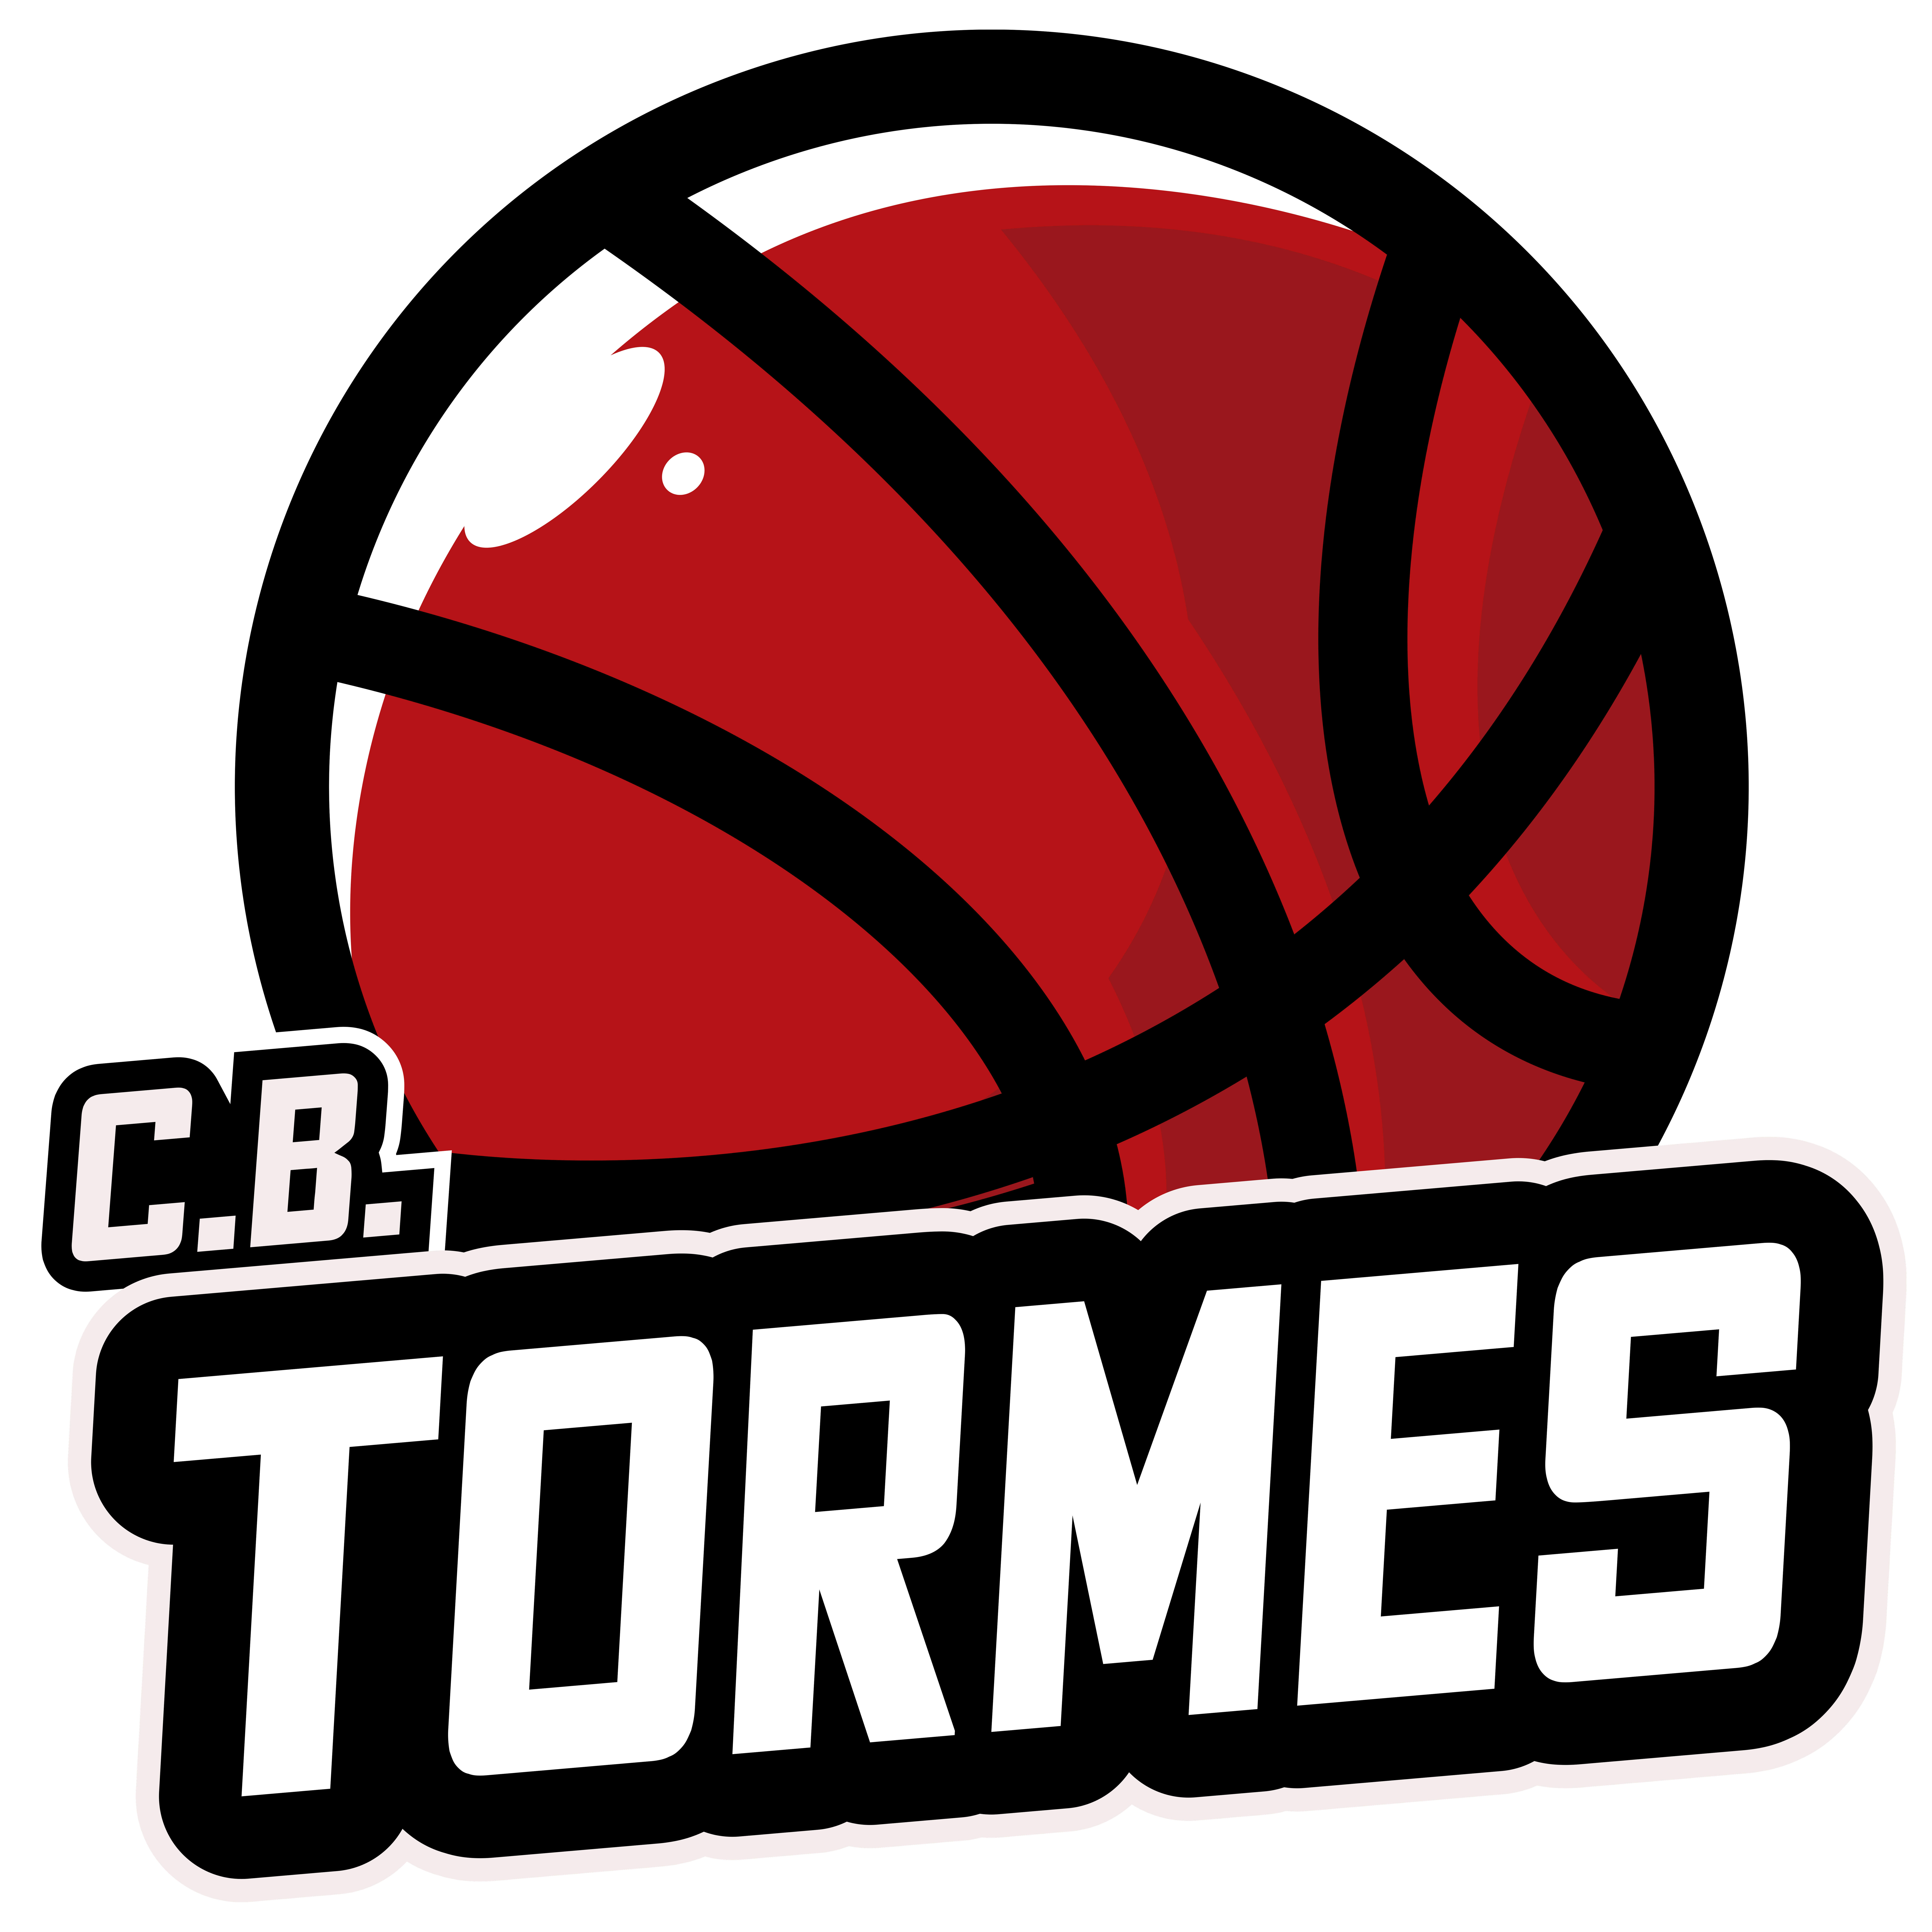 CB Tormes